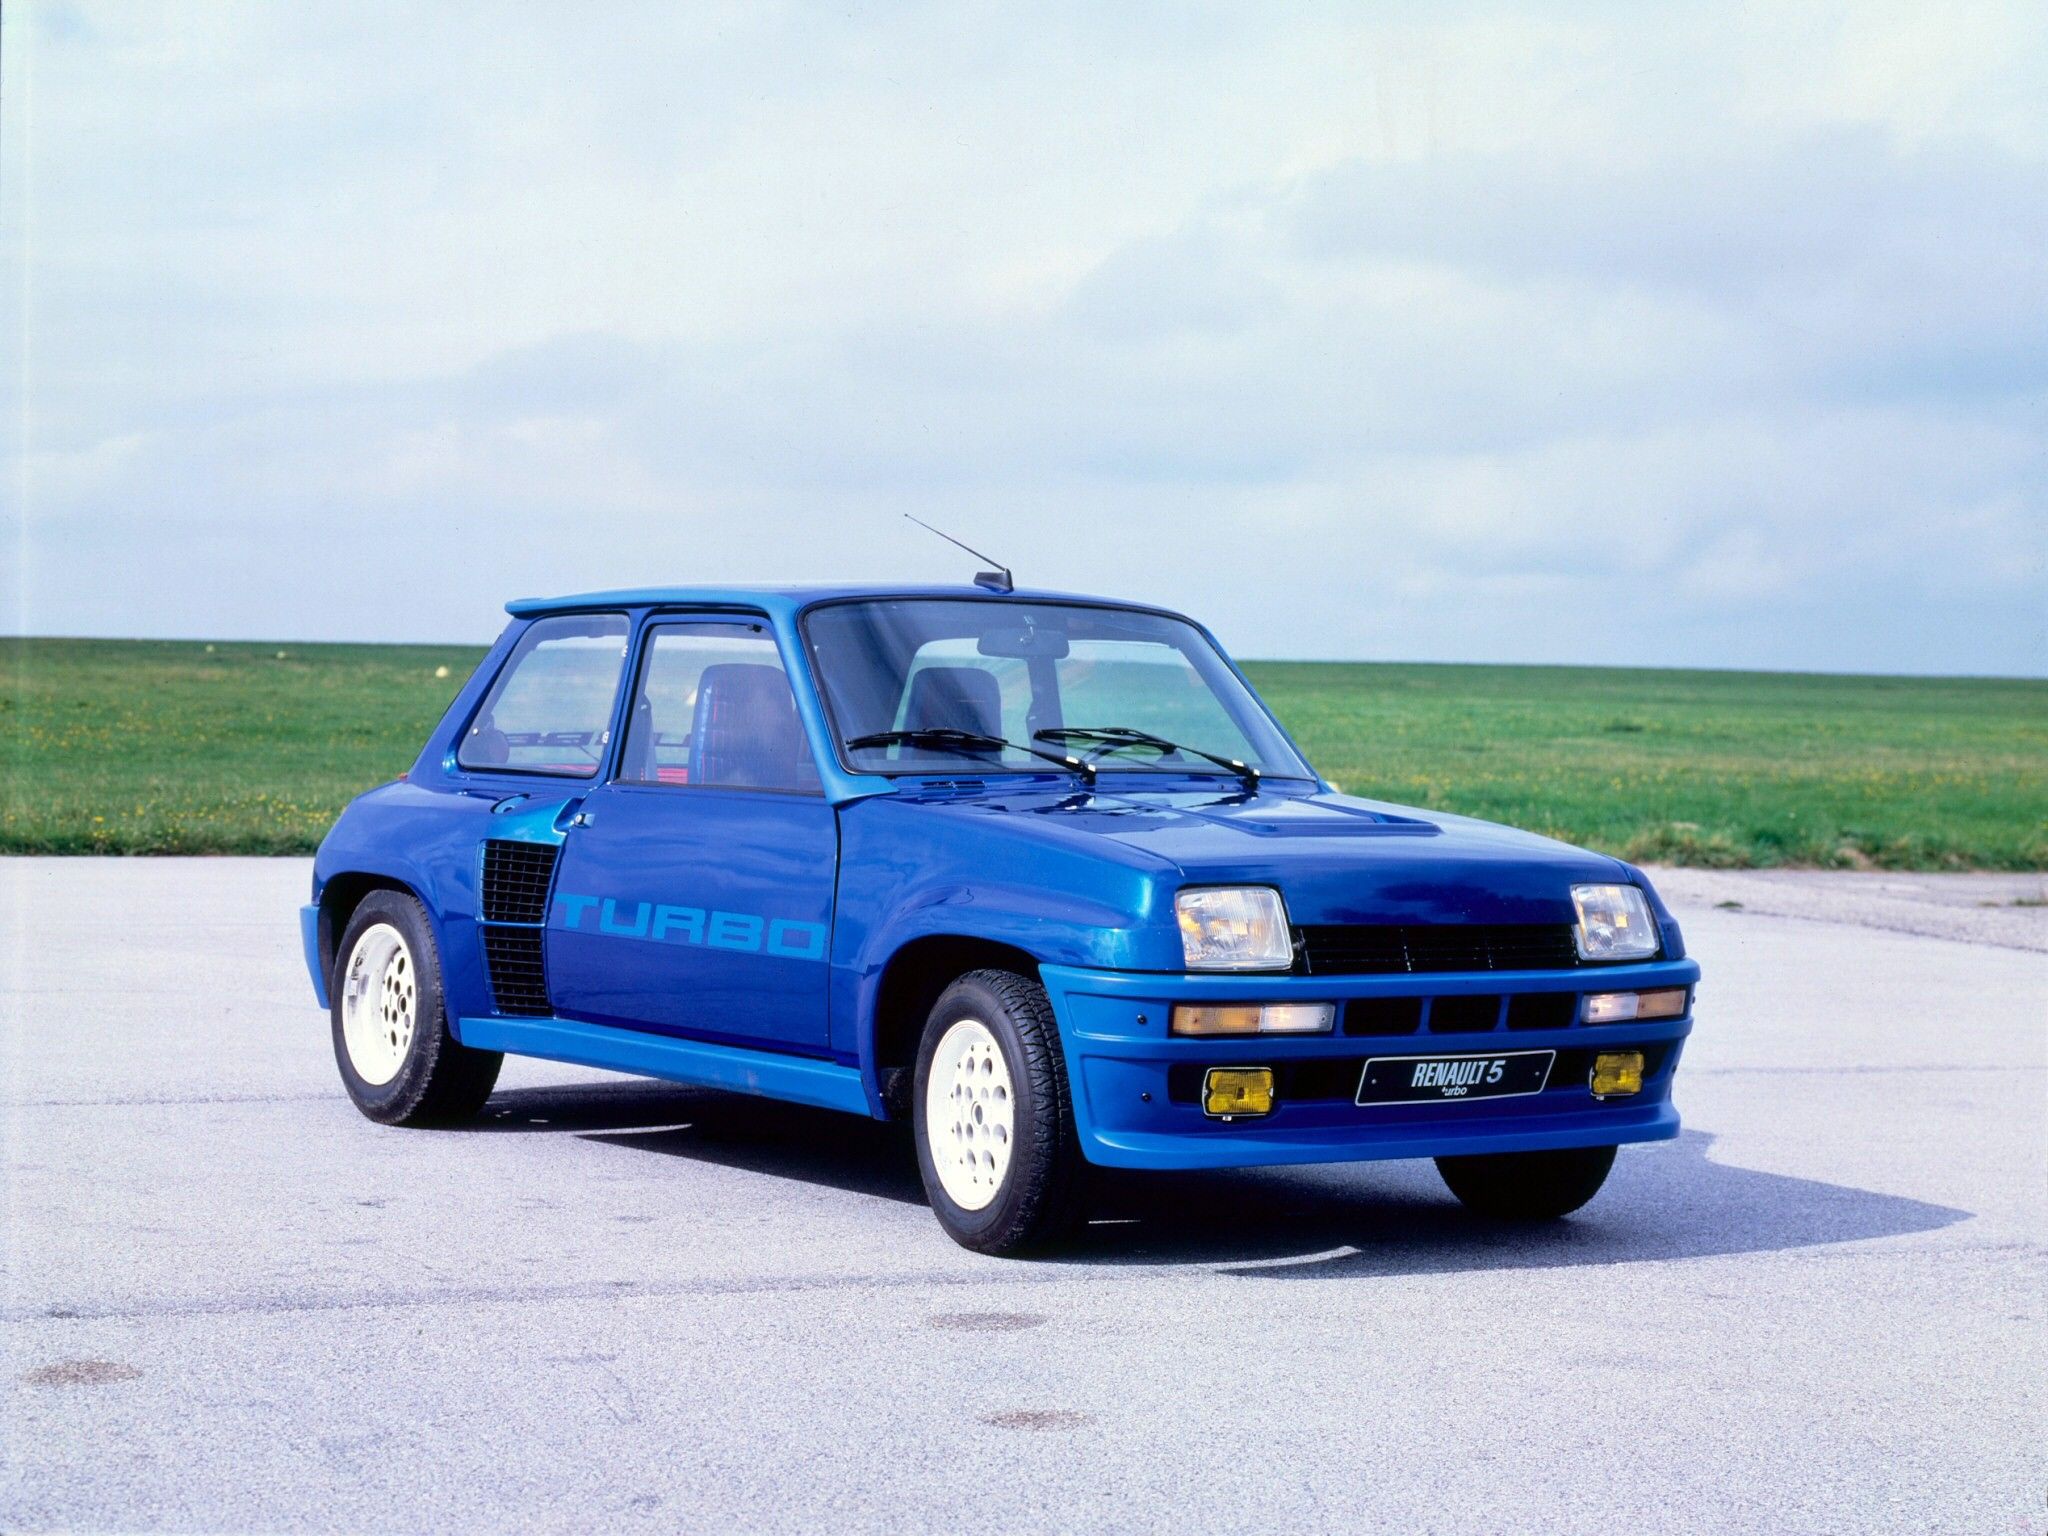 RENAULT 5 Turbo specs & photo - 1984